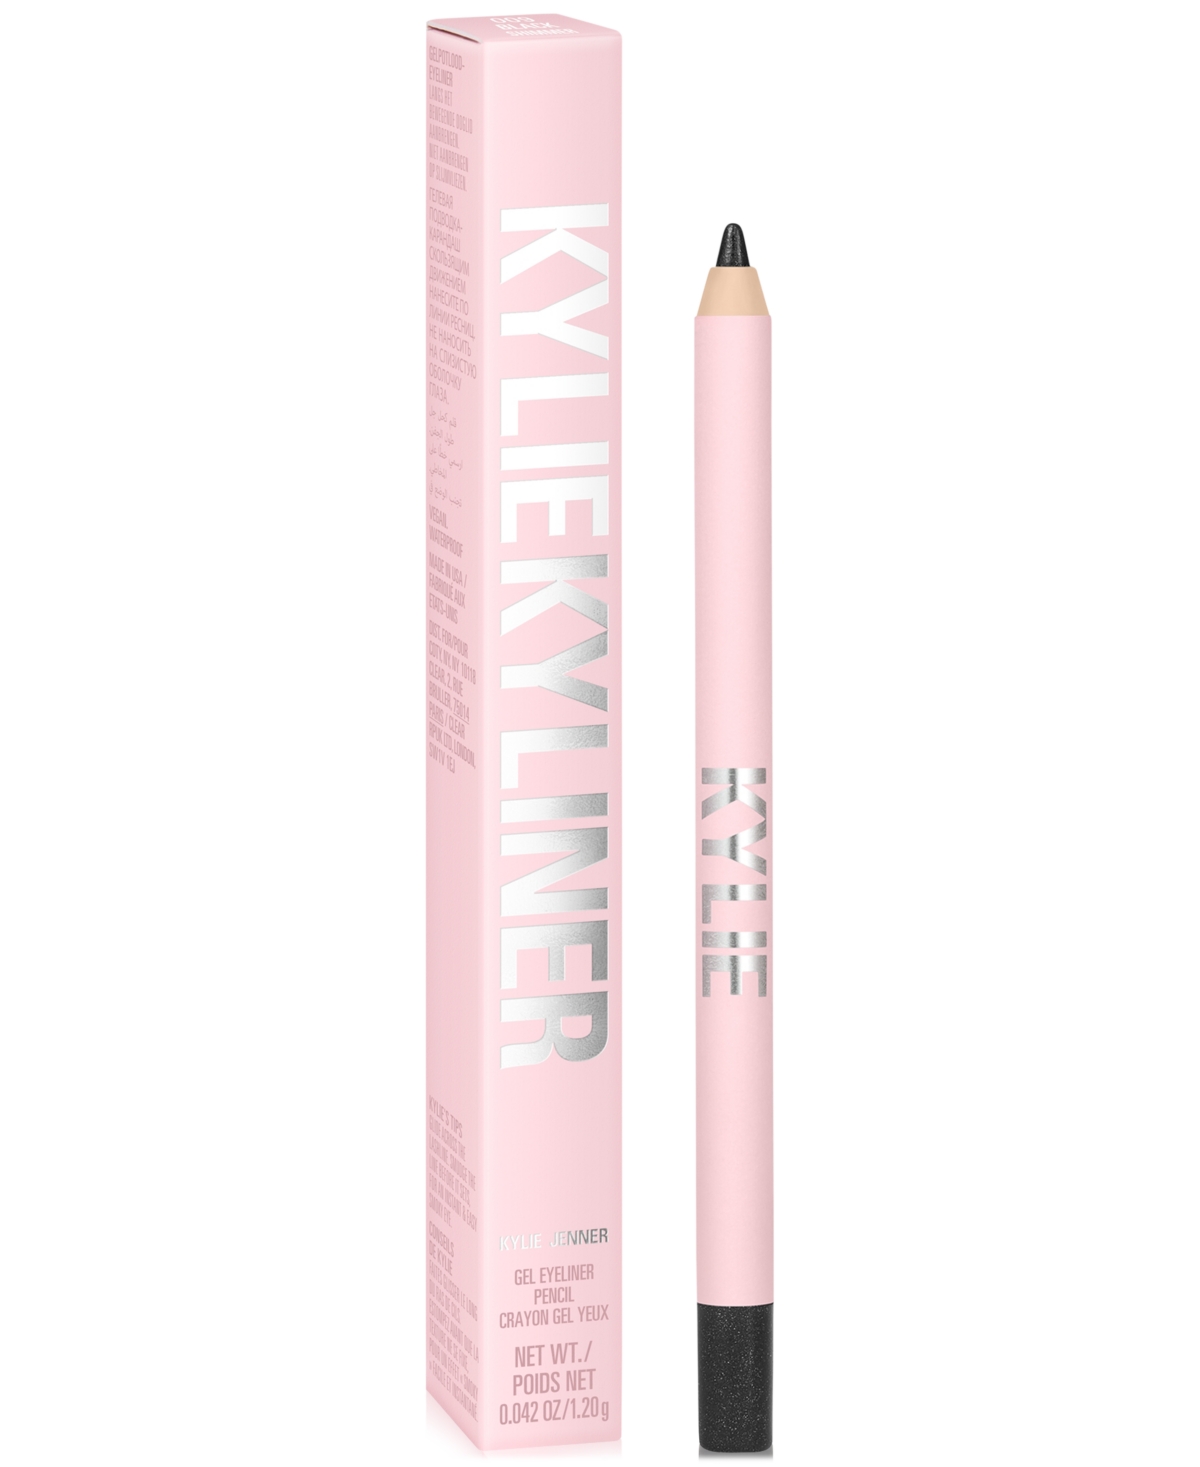 Kylie Cosmetics Kyliner Gel Eyeliner Pencil In Shimmery Black